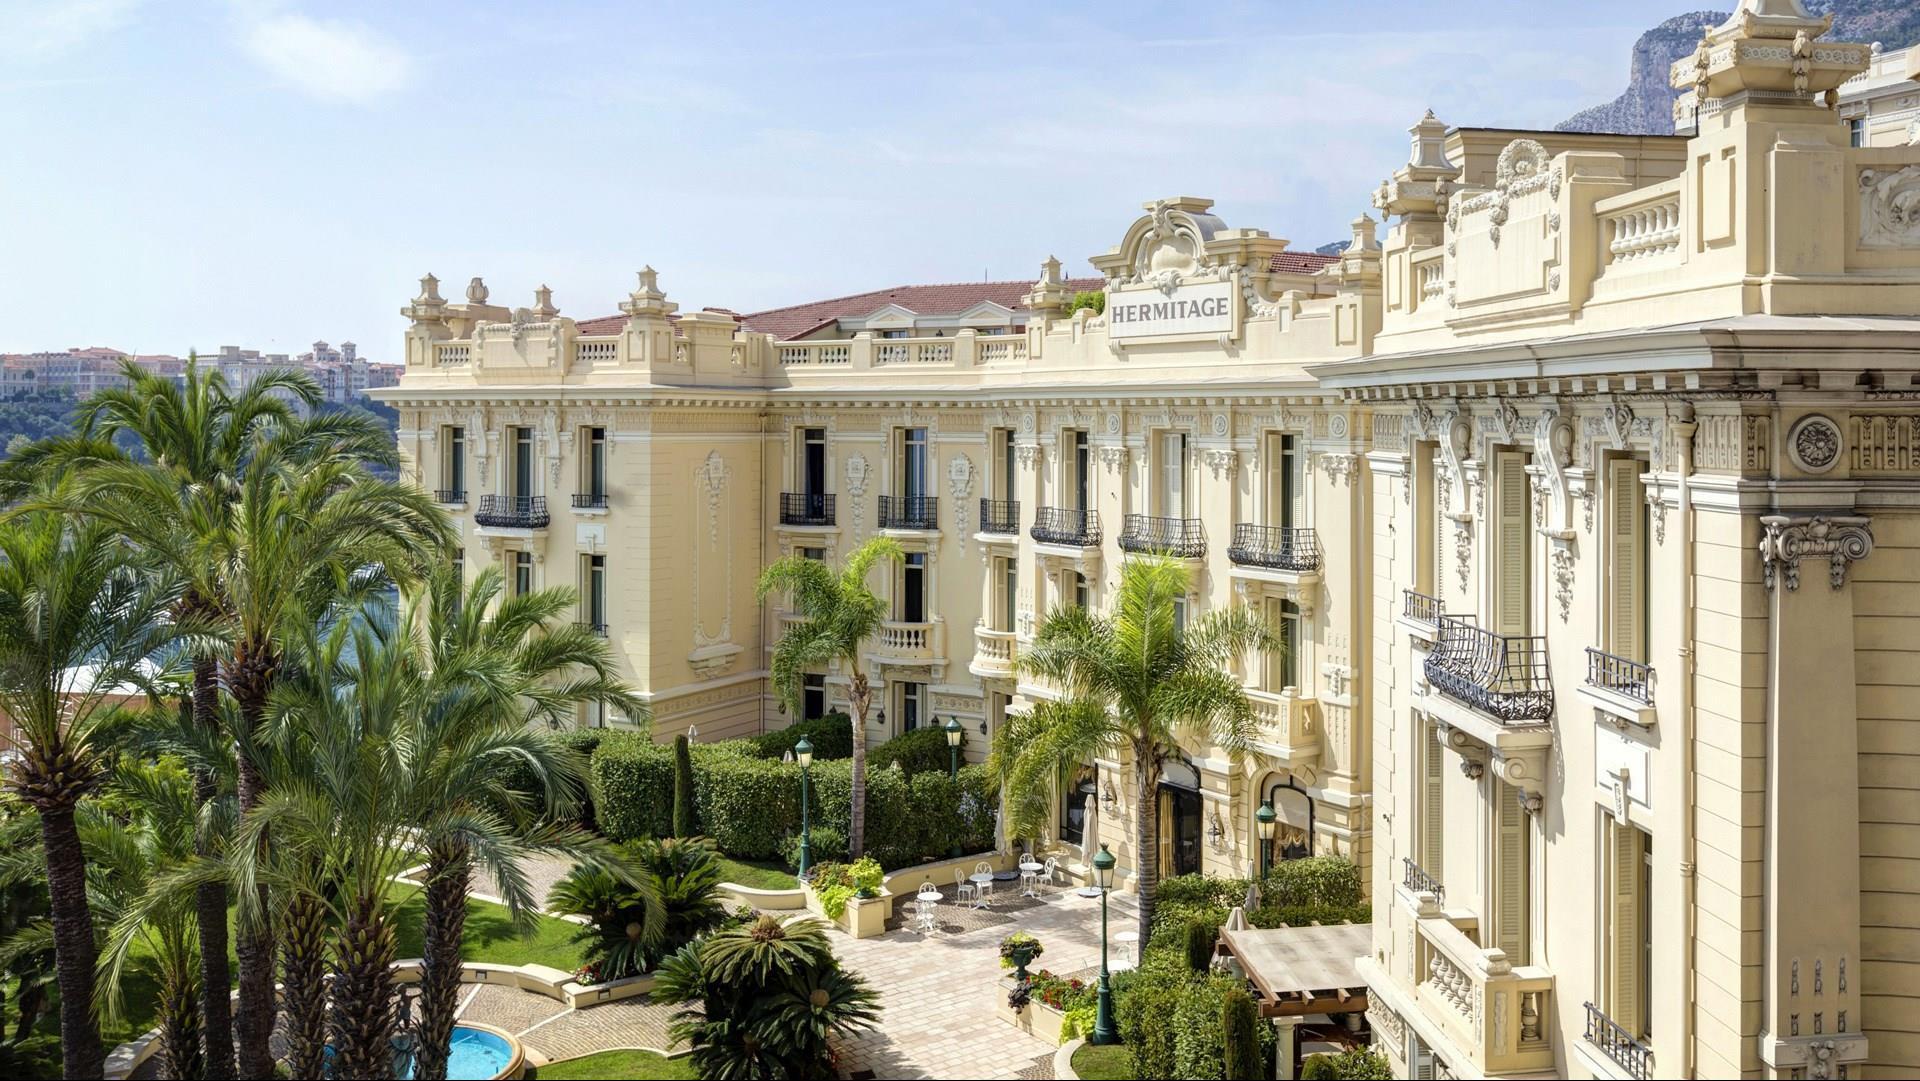 Hotel Hermitage Monte-Carlo 5* in Monte Carlo, MC